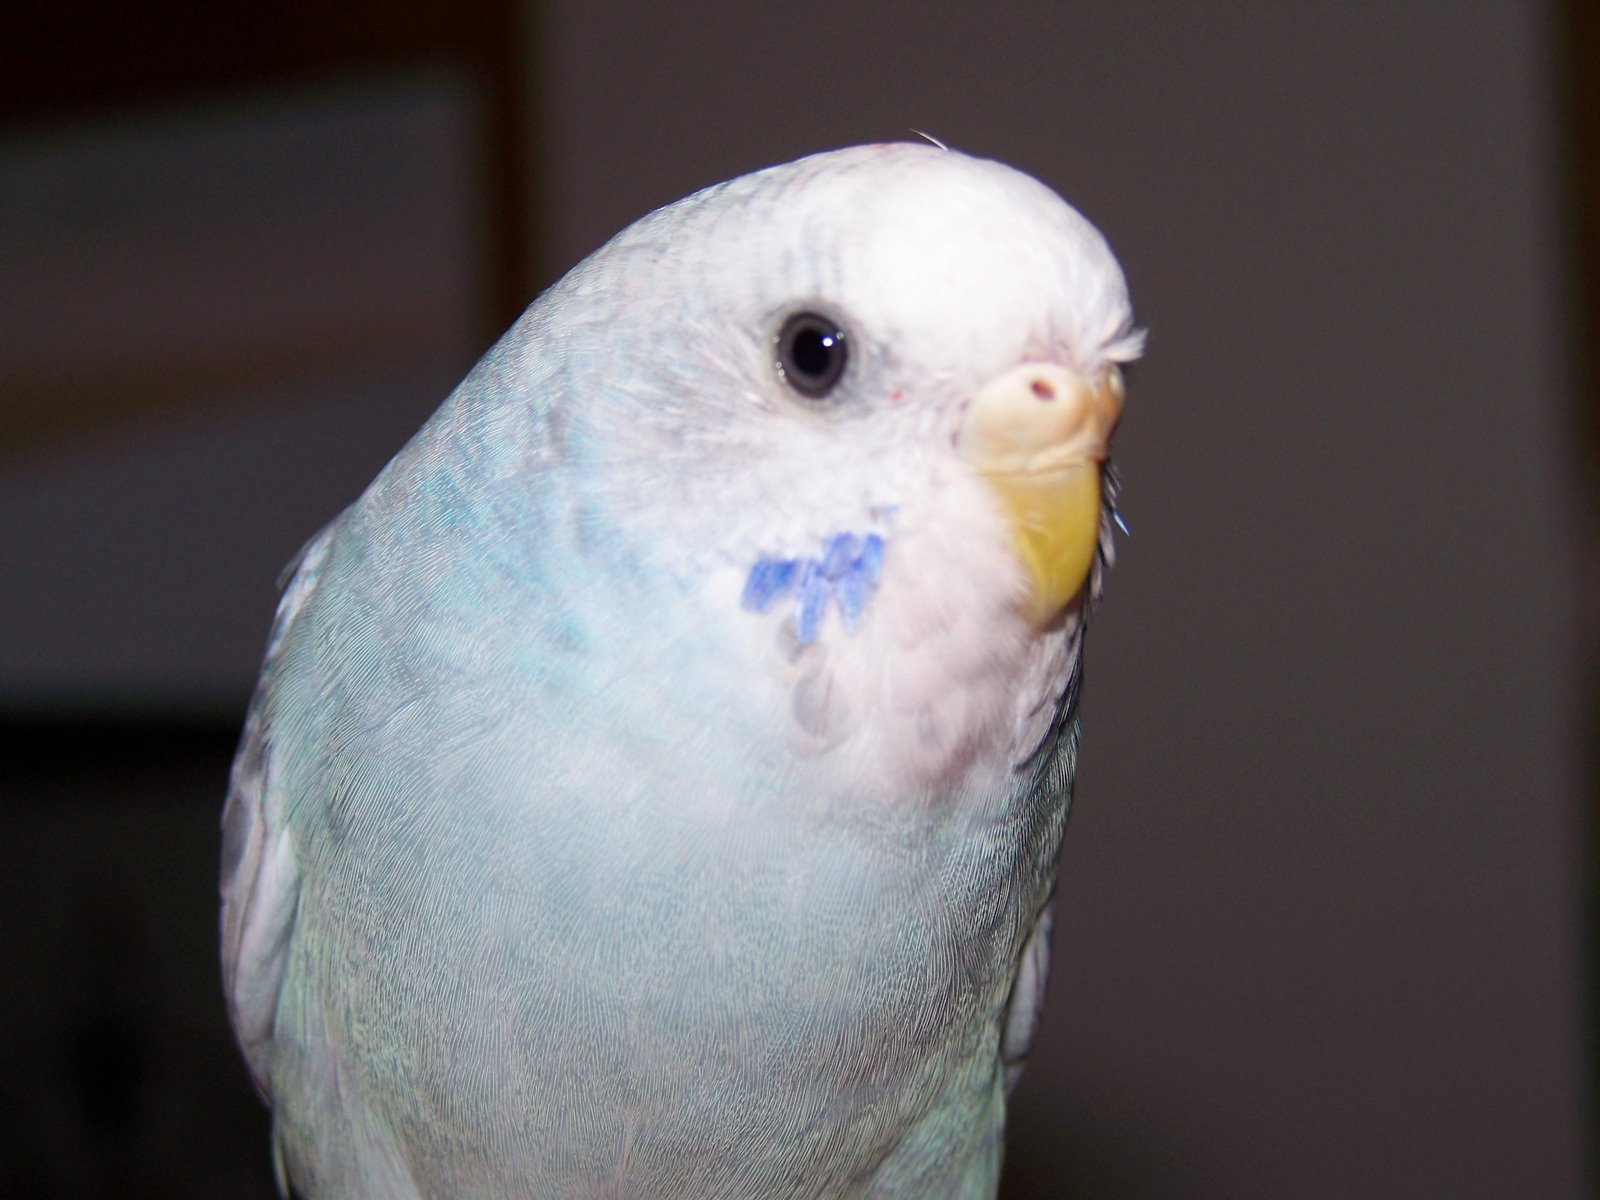 <a href="http://www.birdchannel.com/blog/viewbio.aspx?apid=81557">Hedwig - July 4, 2007</a>